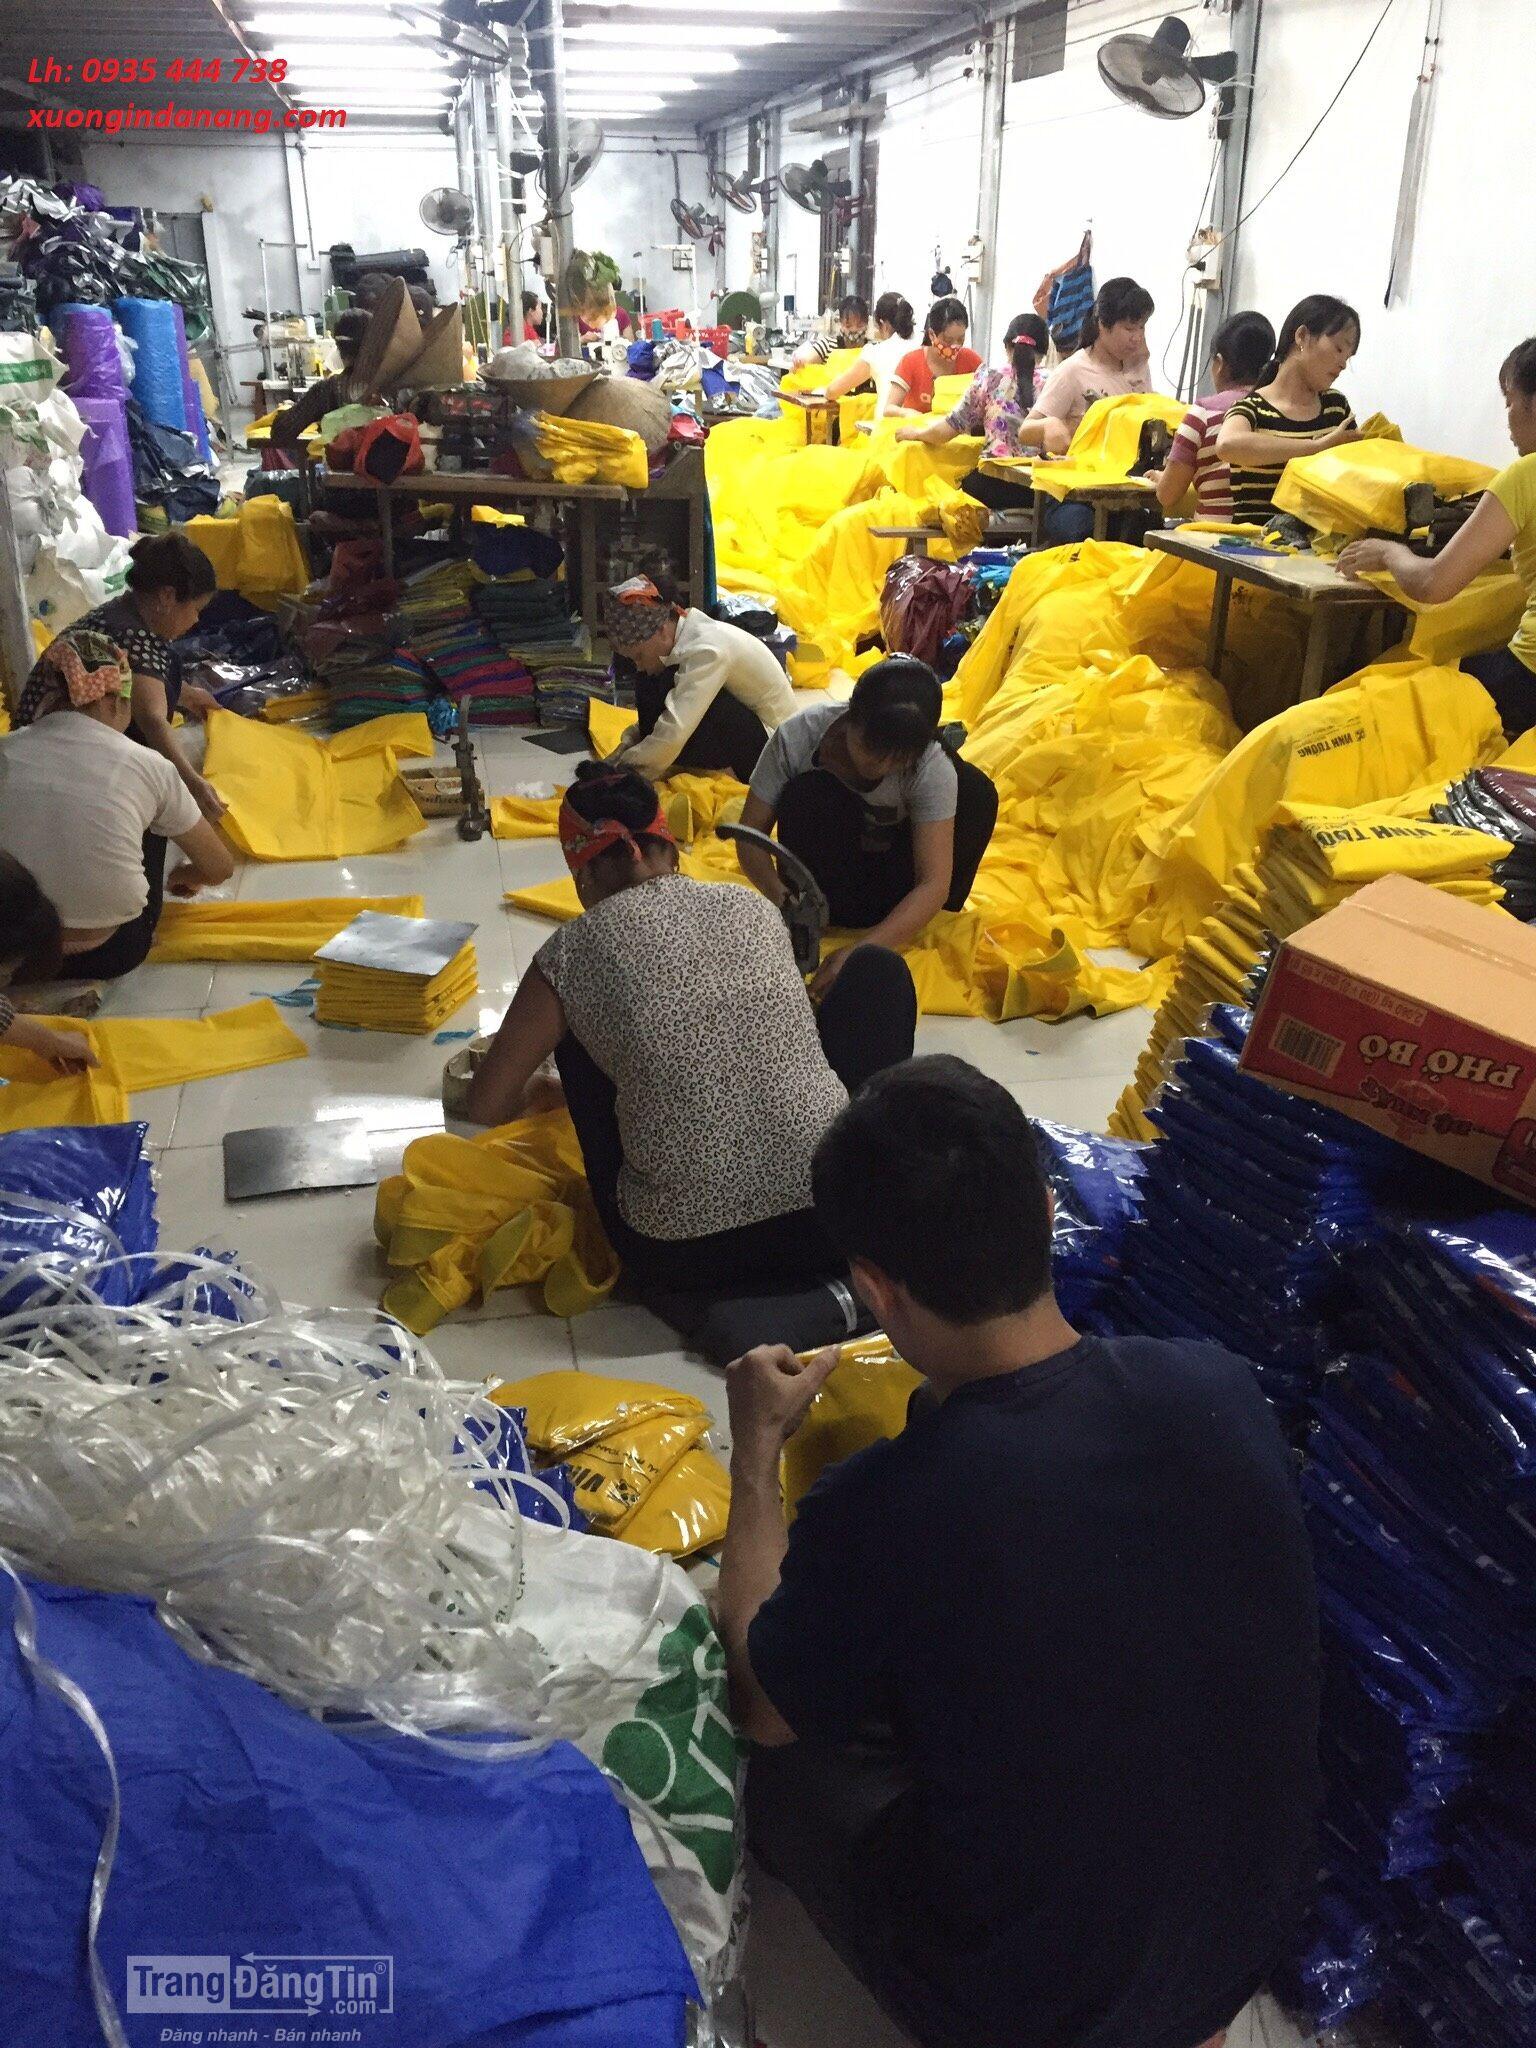 Sản xuất áo mưa giá rẻ cung cấp tại thành phố Hồ Chí Minh